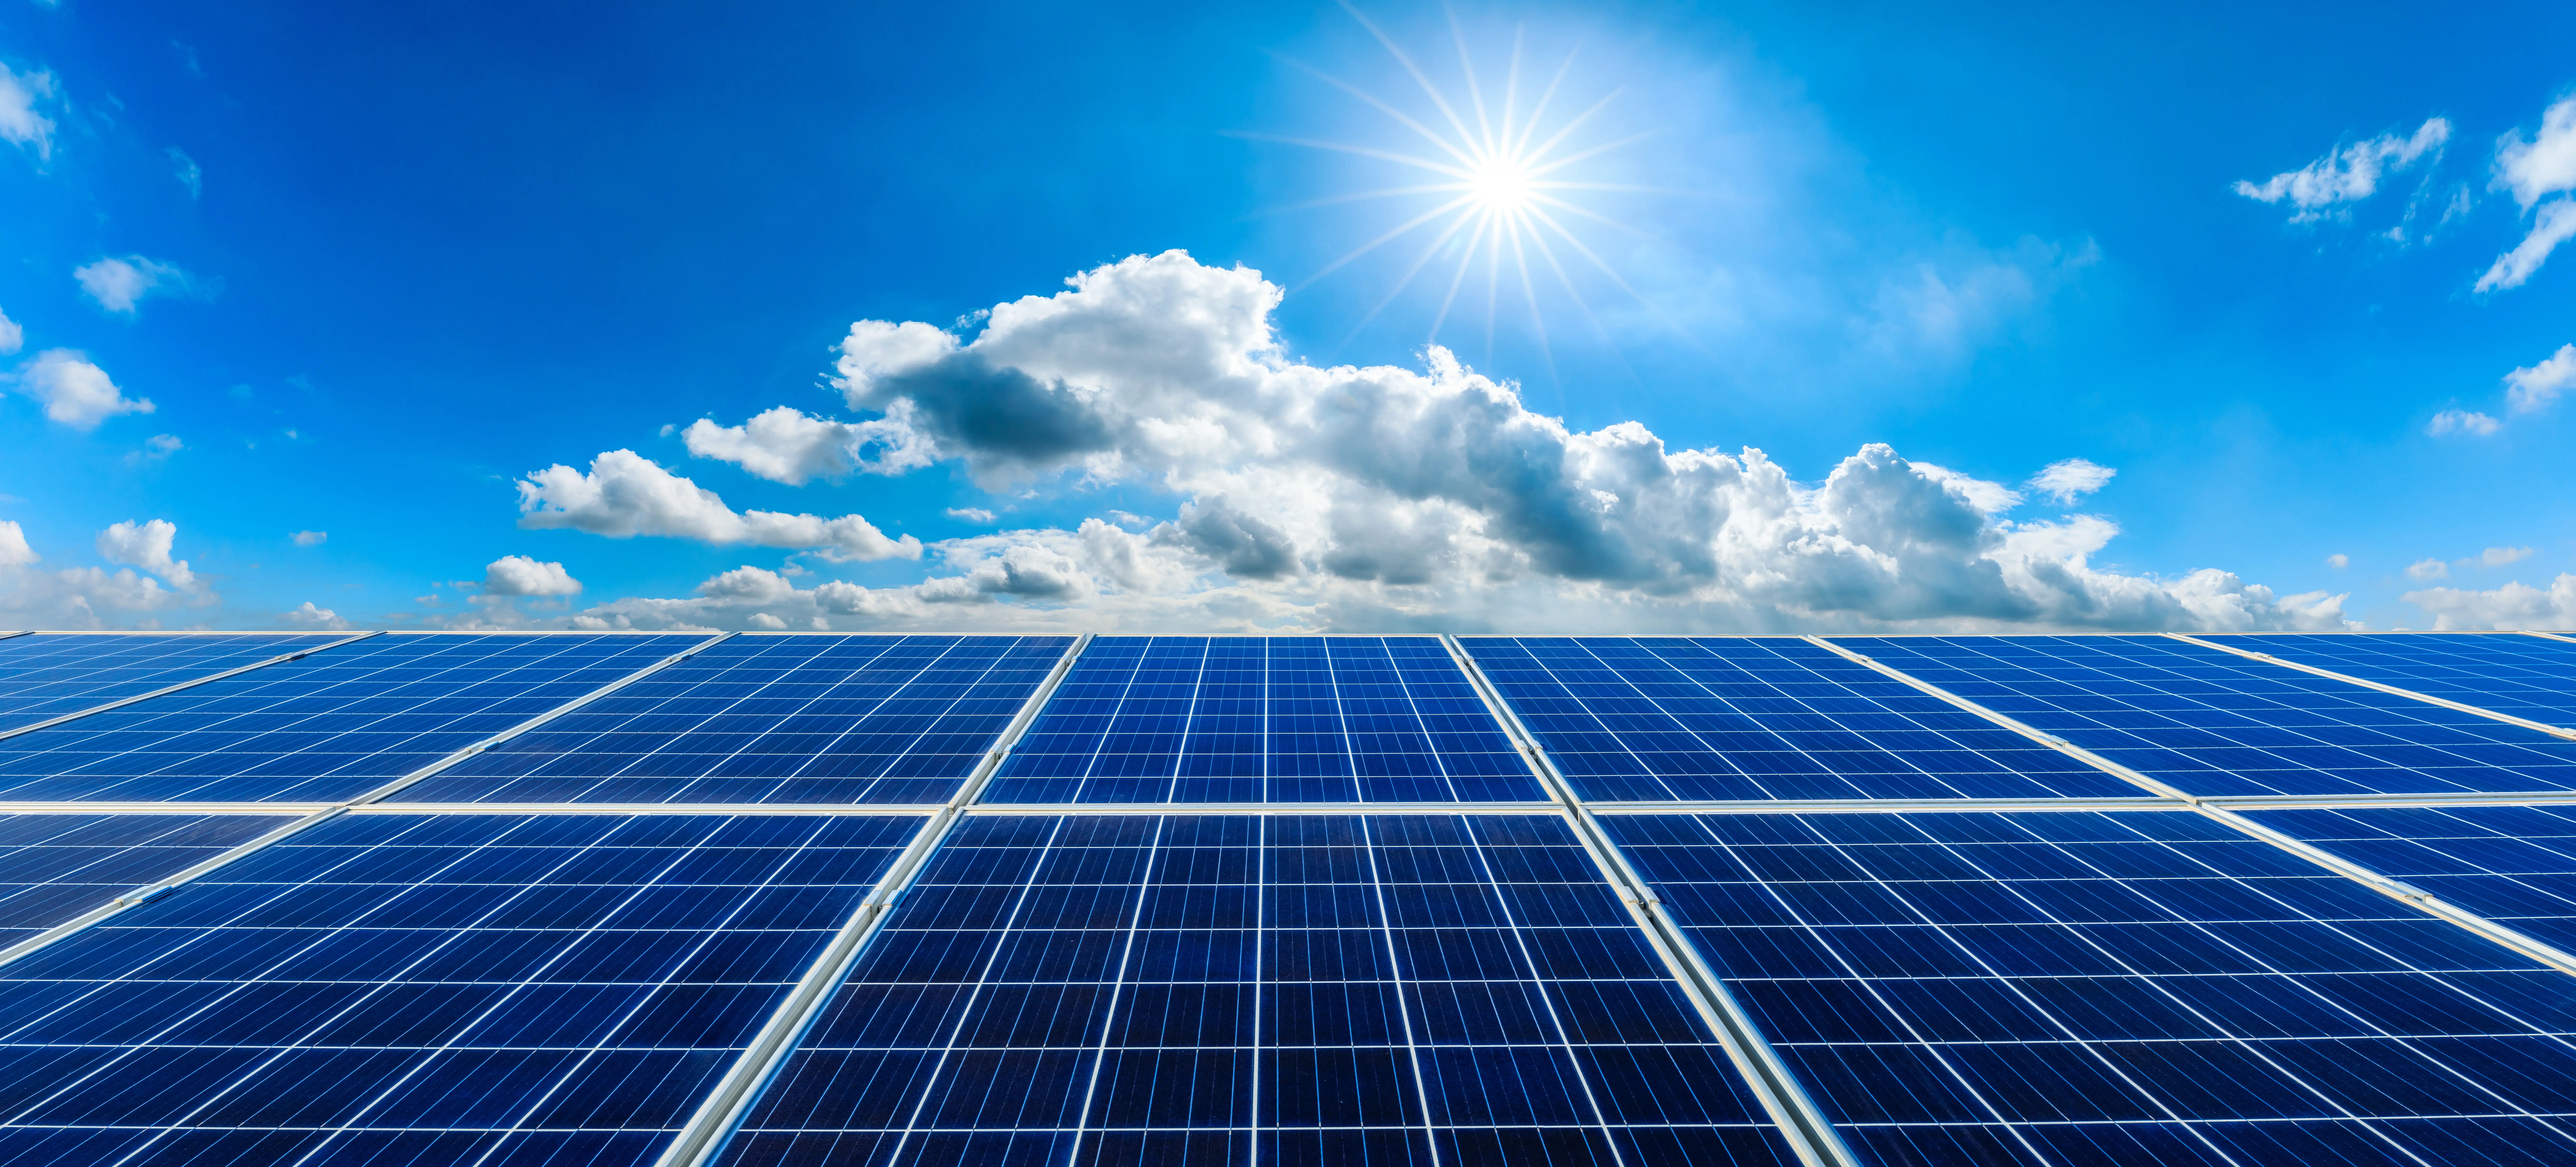 Der Photovoltaik Umsatzsteuervorteil bleibt